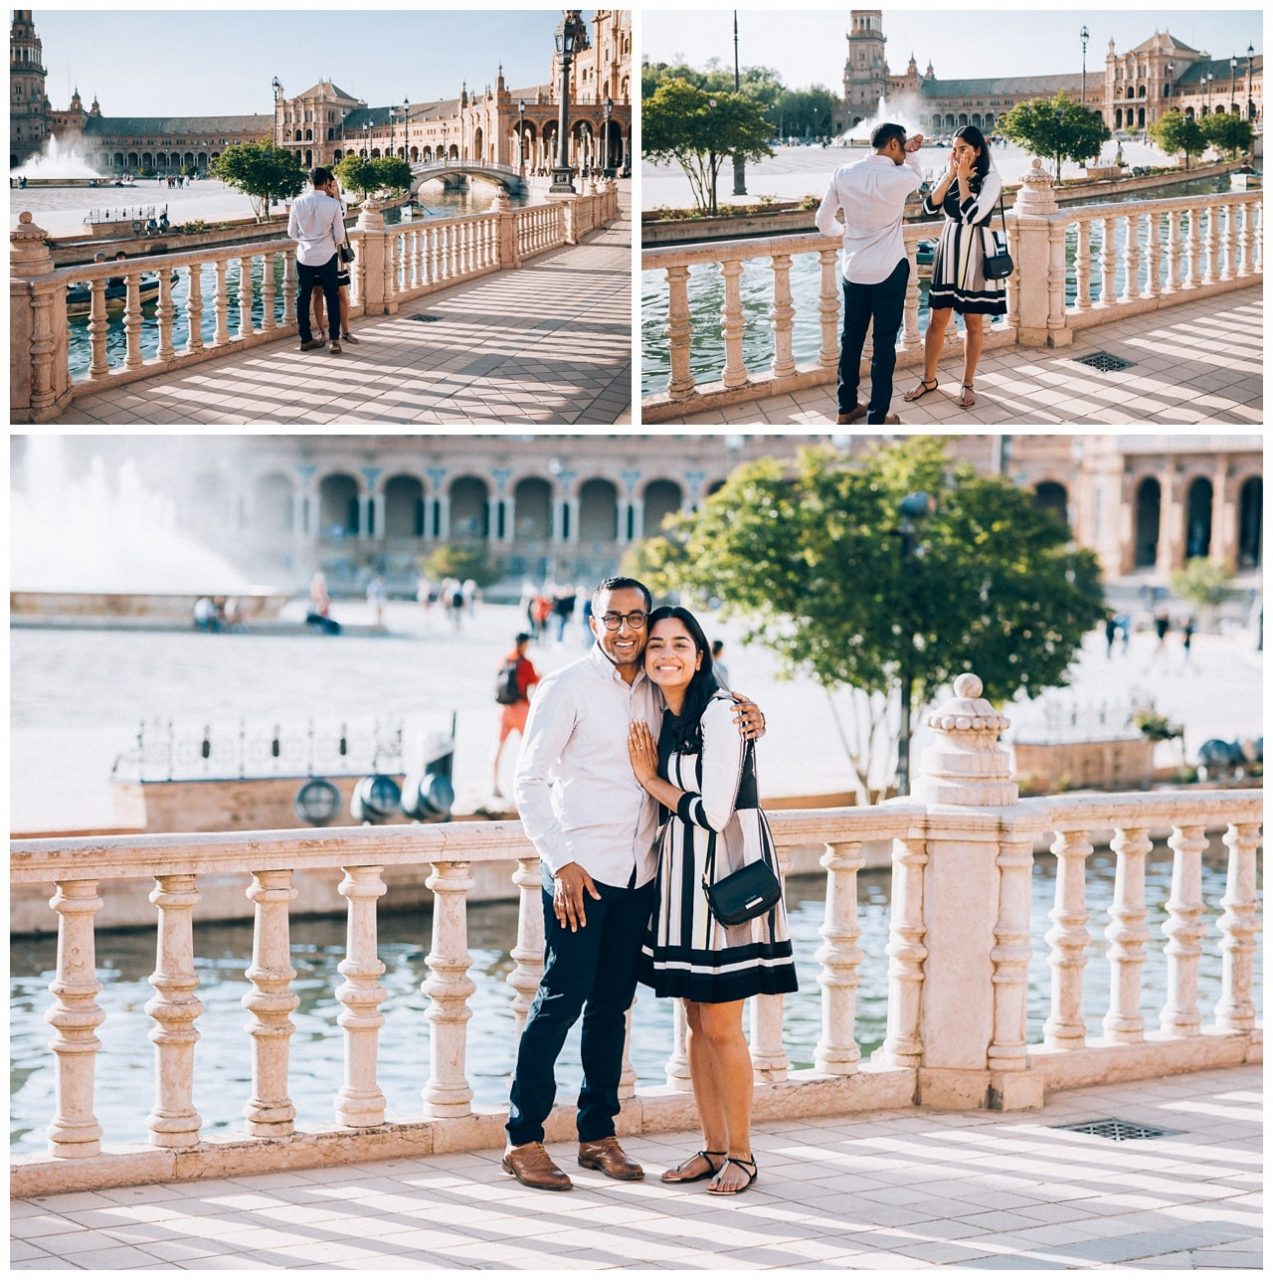 Marriage Proposal en Plaza de España - Sevilla